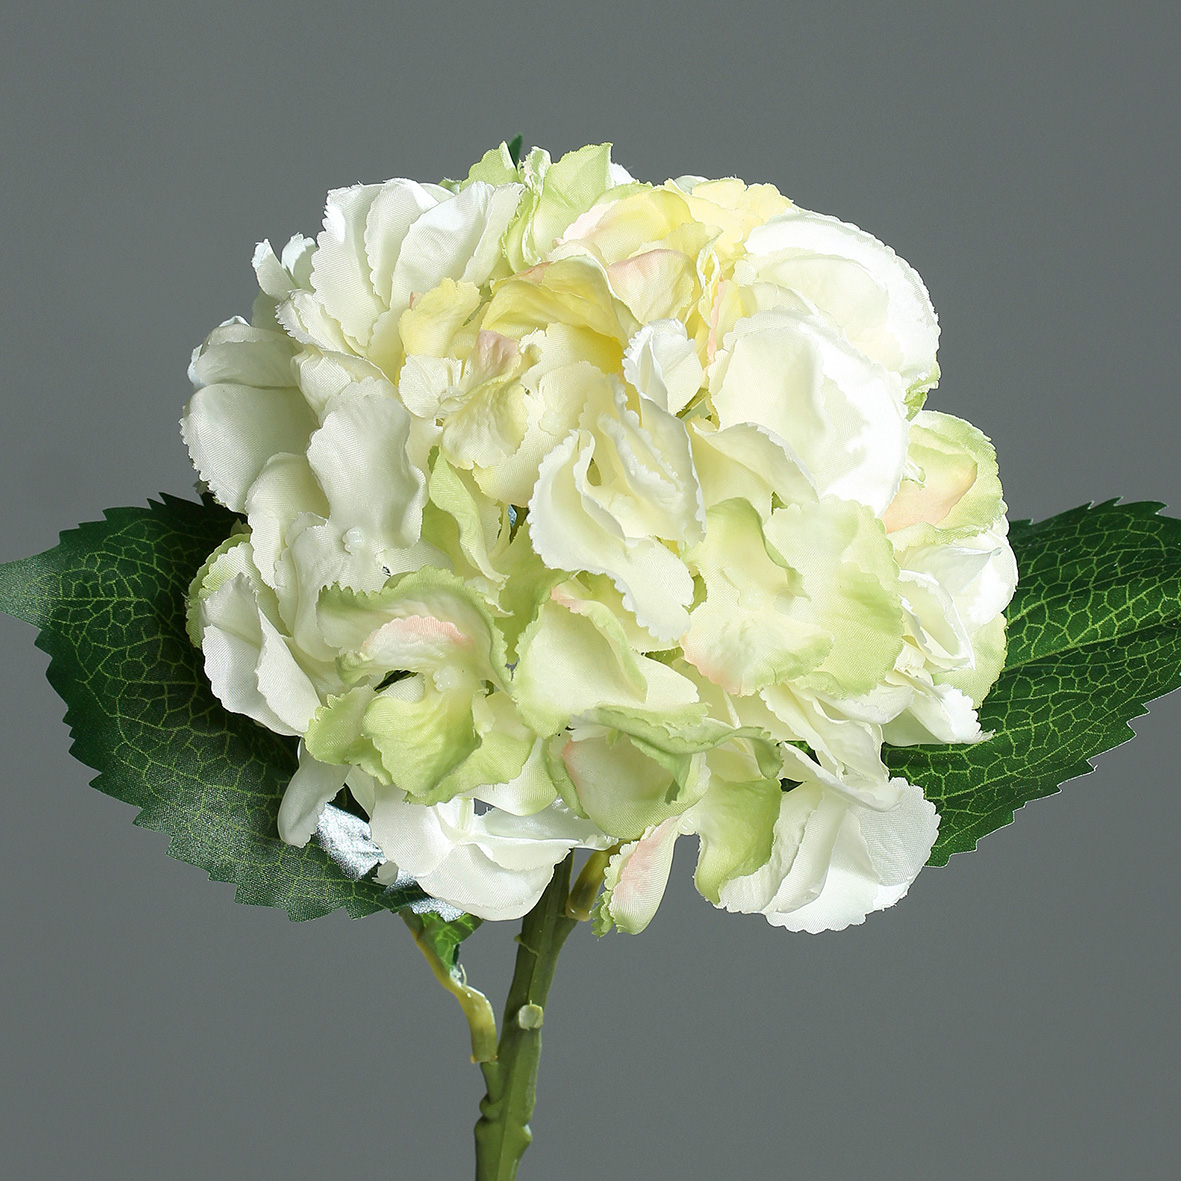 DPI GMBH - BRÜHL Hortensie green-cream mit Blättern 44cm 